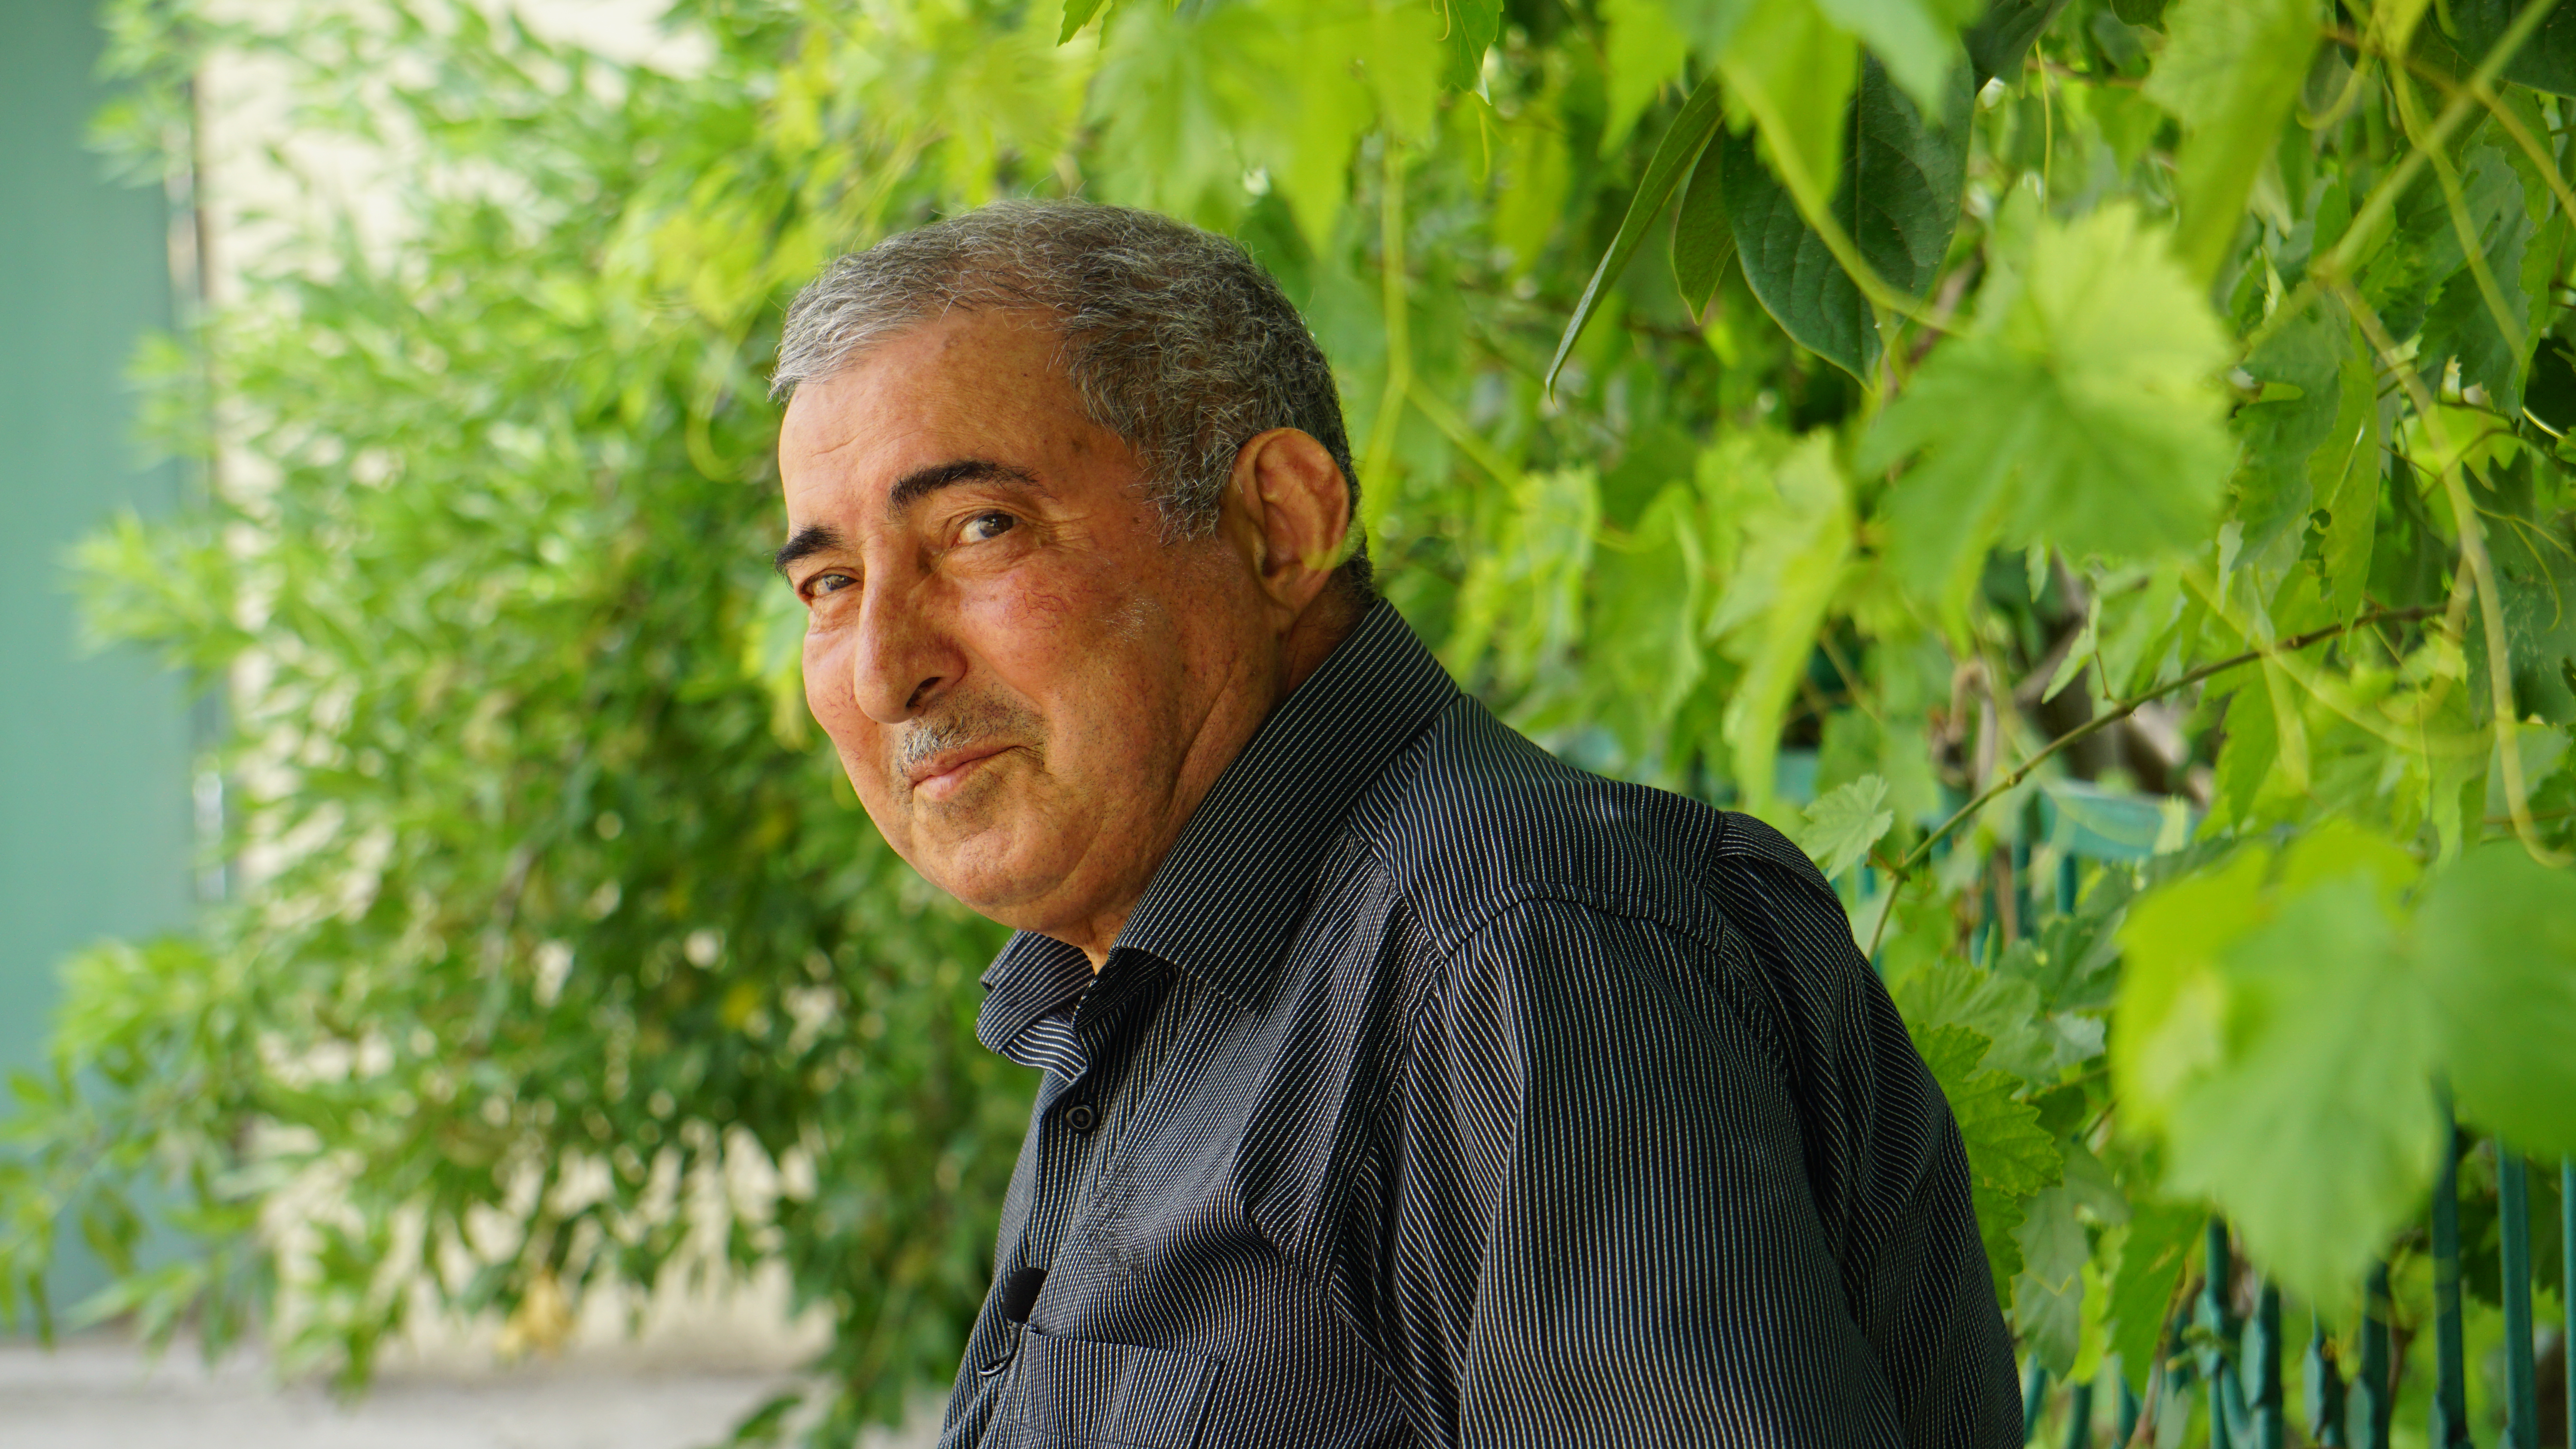 Фермер Гурбанали Бабашов считает, что для развития виноградарства в стране не нужны субсидии, необходимо устранить монополию. Шамахы, Азербайджан. Фото Ислам Шыхали